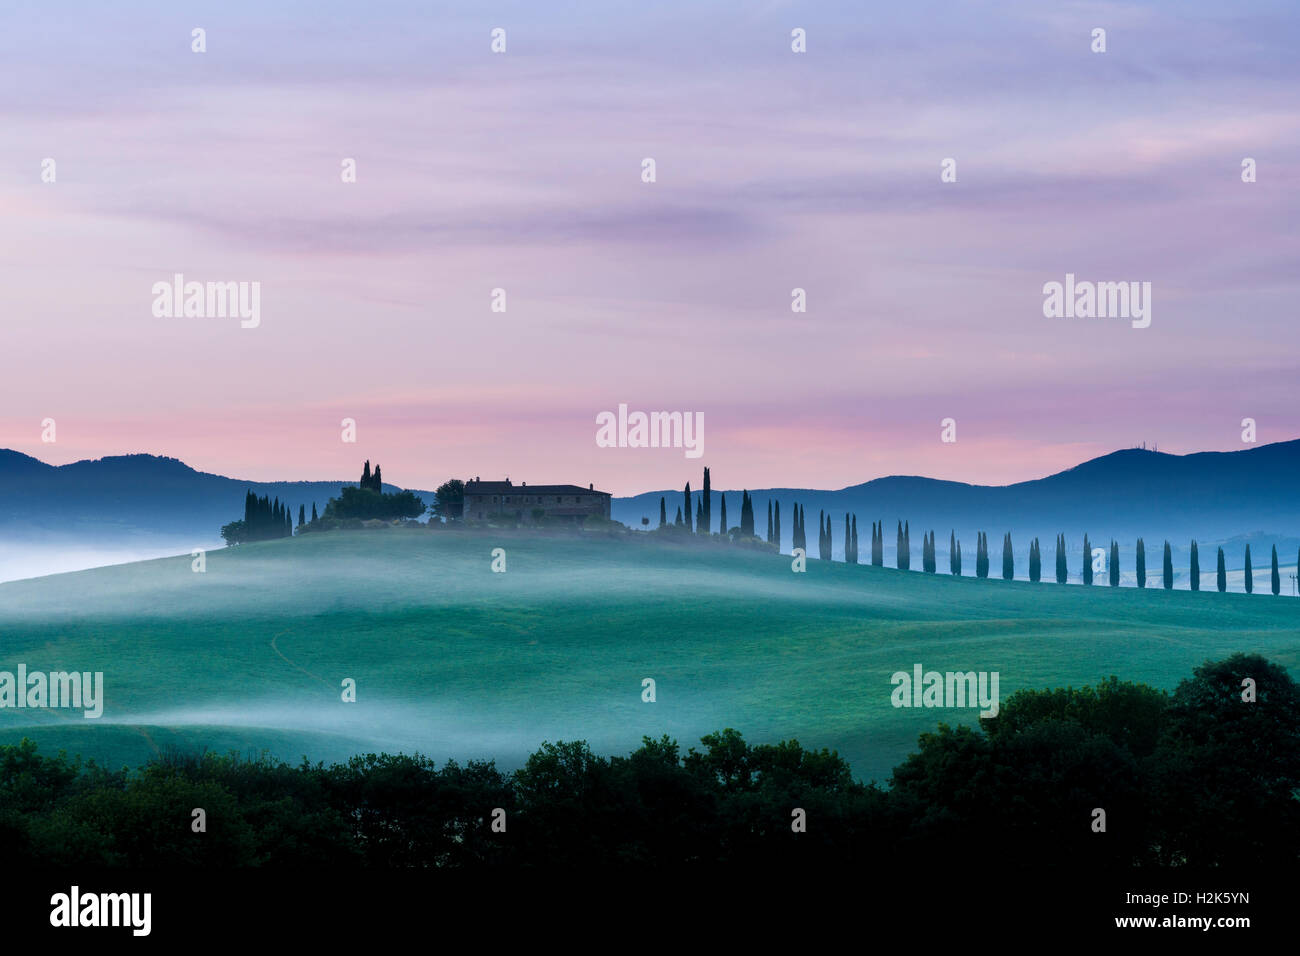 Typische grüne toskanische Landschaft in Bagno Vignoni, Val d ' Orcia mit einer Farm auf einem Hügel, Felder, Zypressen, Bäume und Morgen Nebel Stockfoto